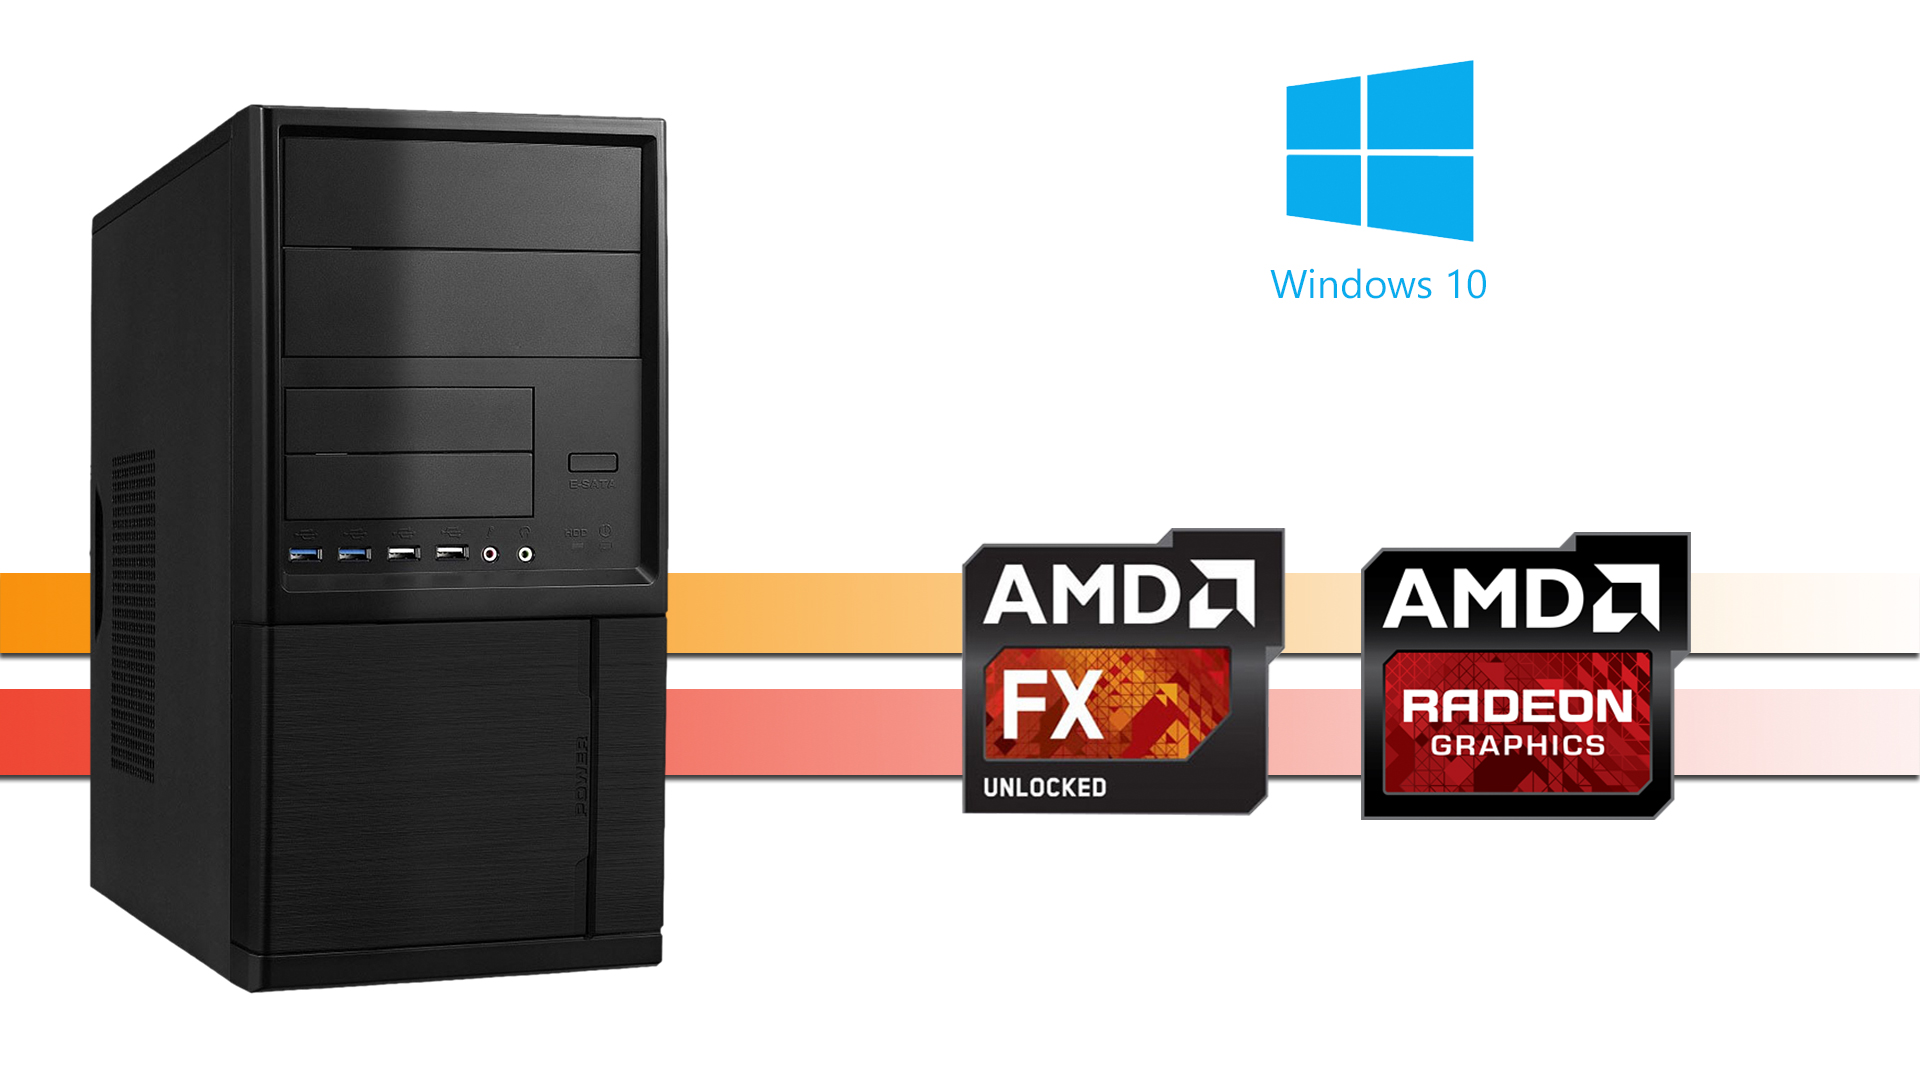 X-Working 9380: 8GB RAM, 256GB SSD, Windows 10 Pro